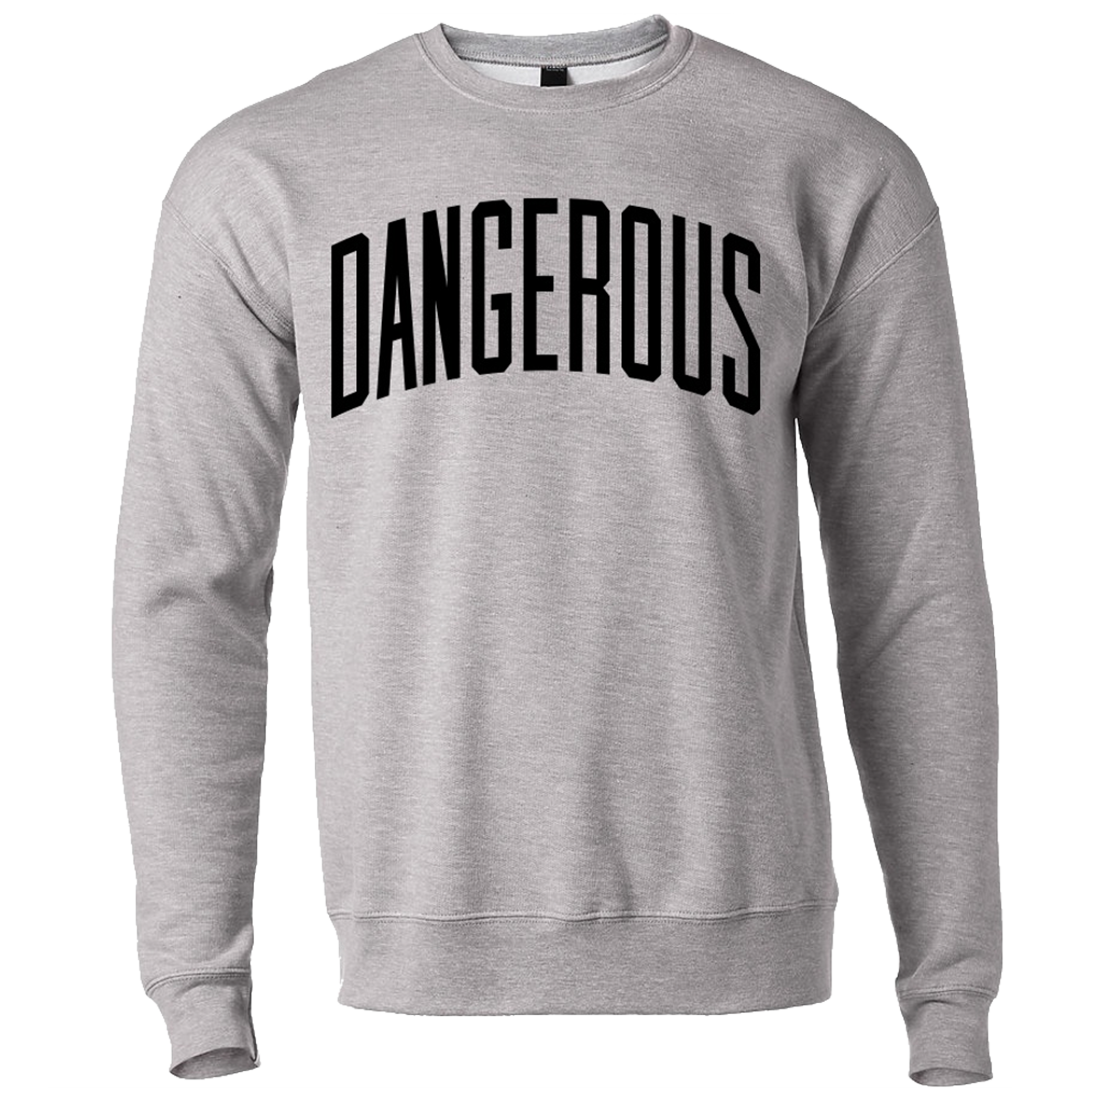 Dangerous Sweatshirt